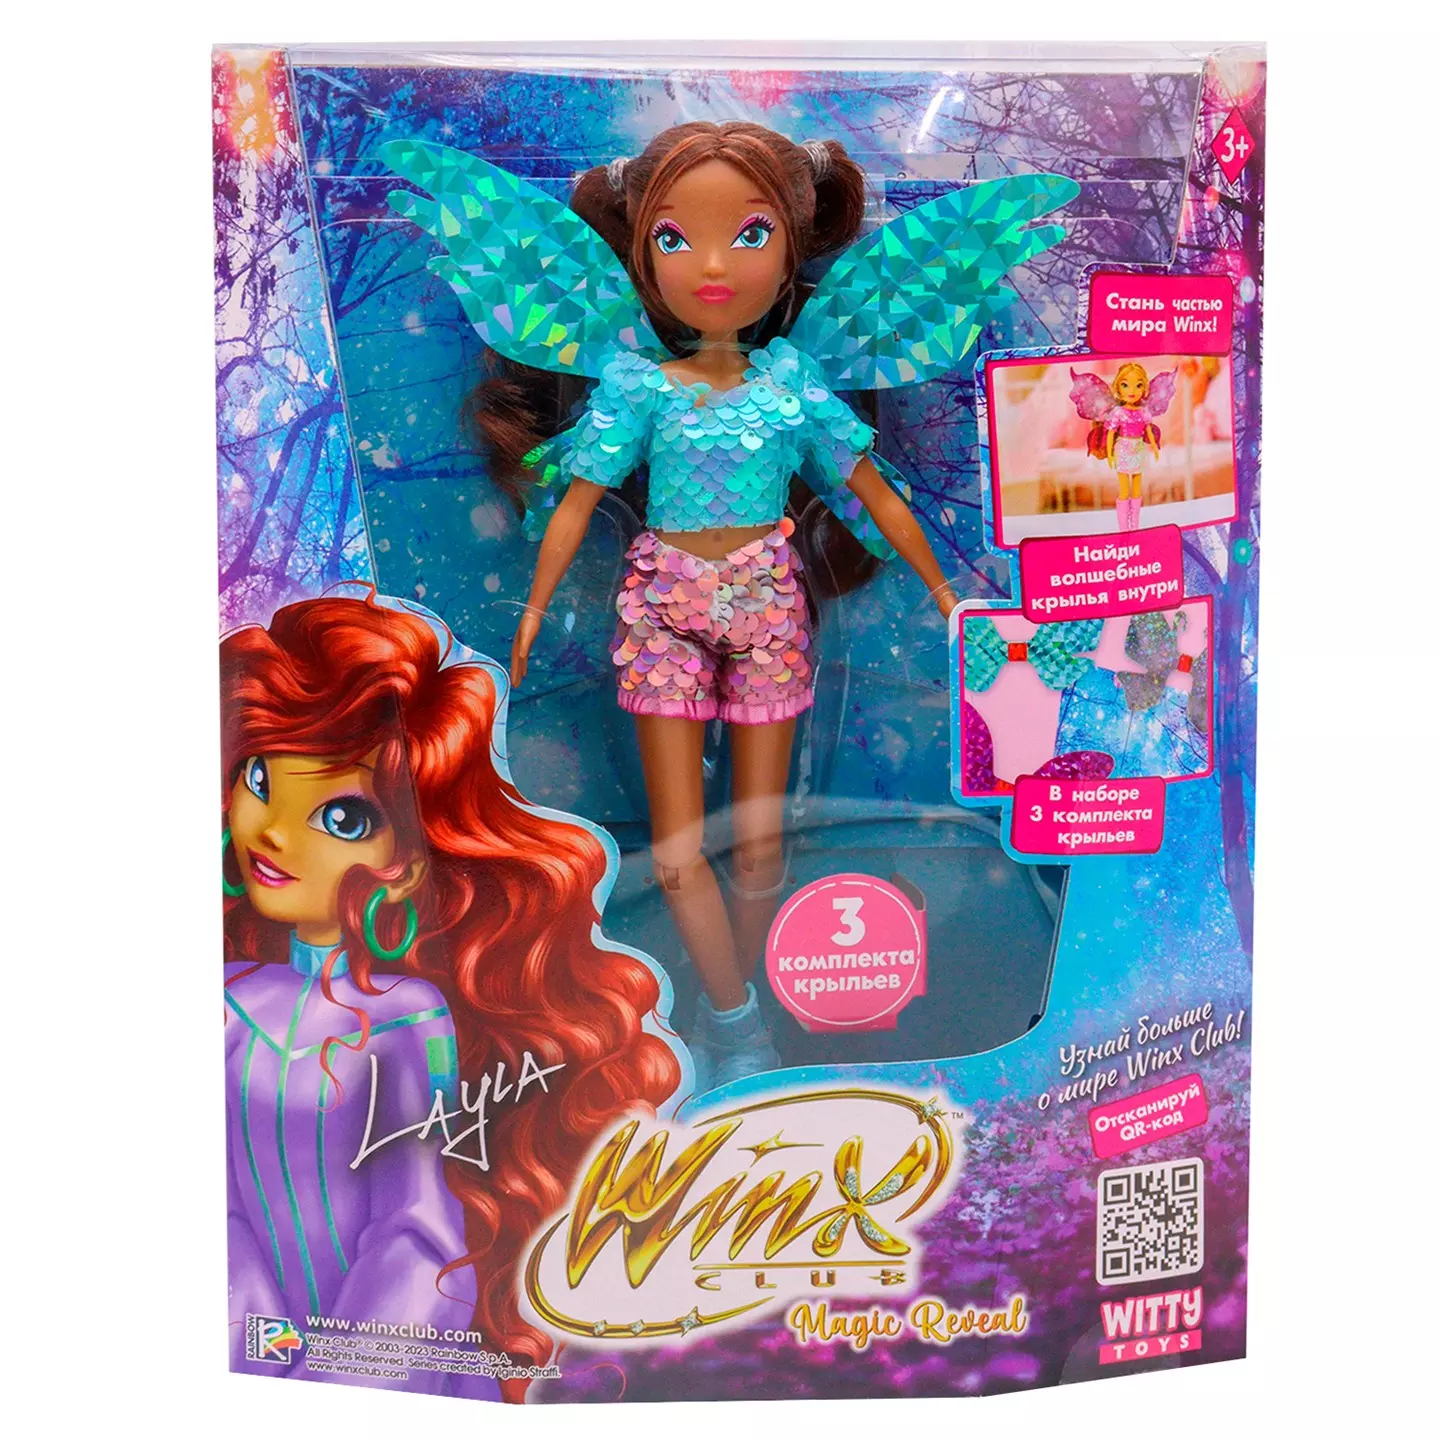 Кукла шарнирная Winx Club Magic reveal Лейла с крыльями 3 шт 24 см IW01302205